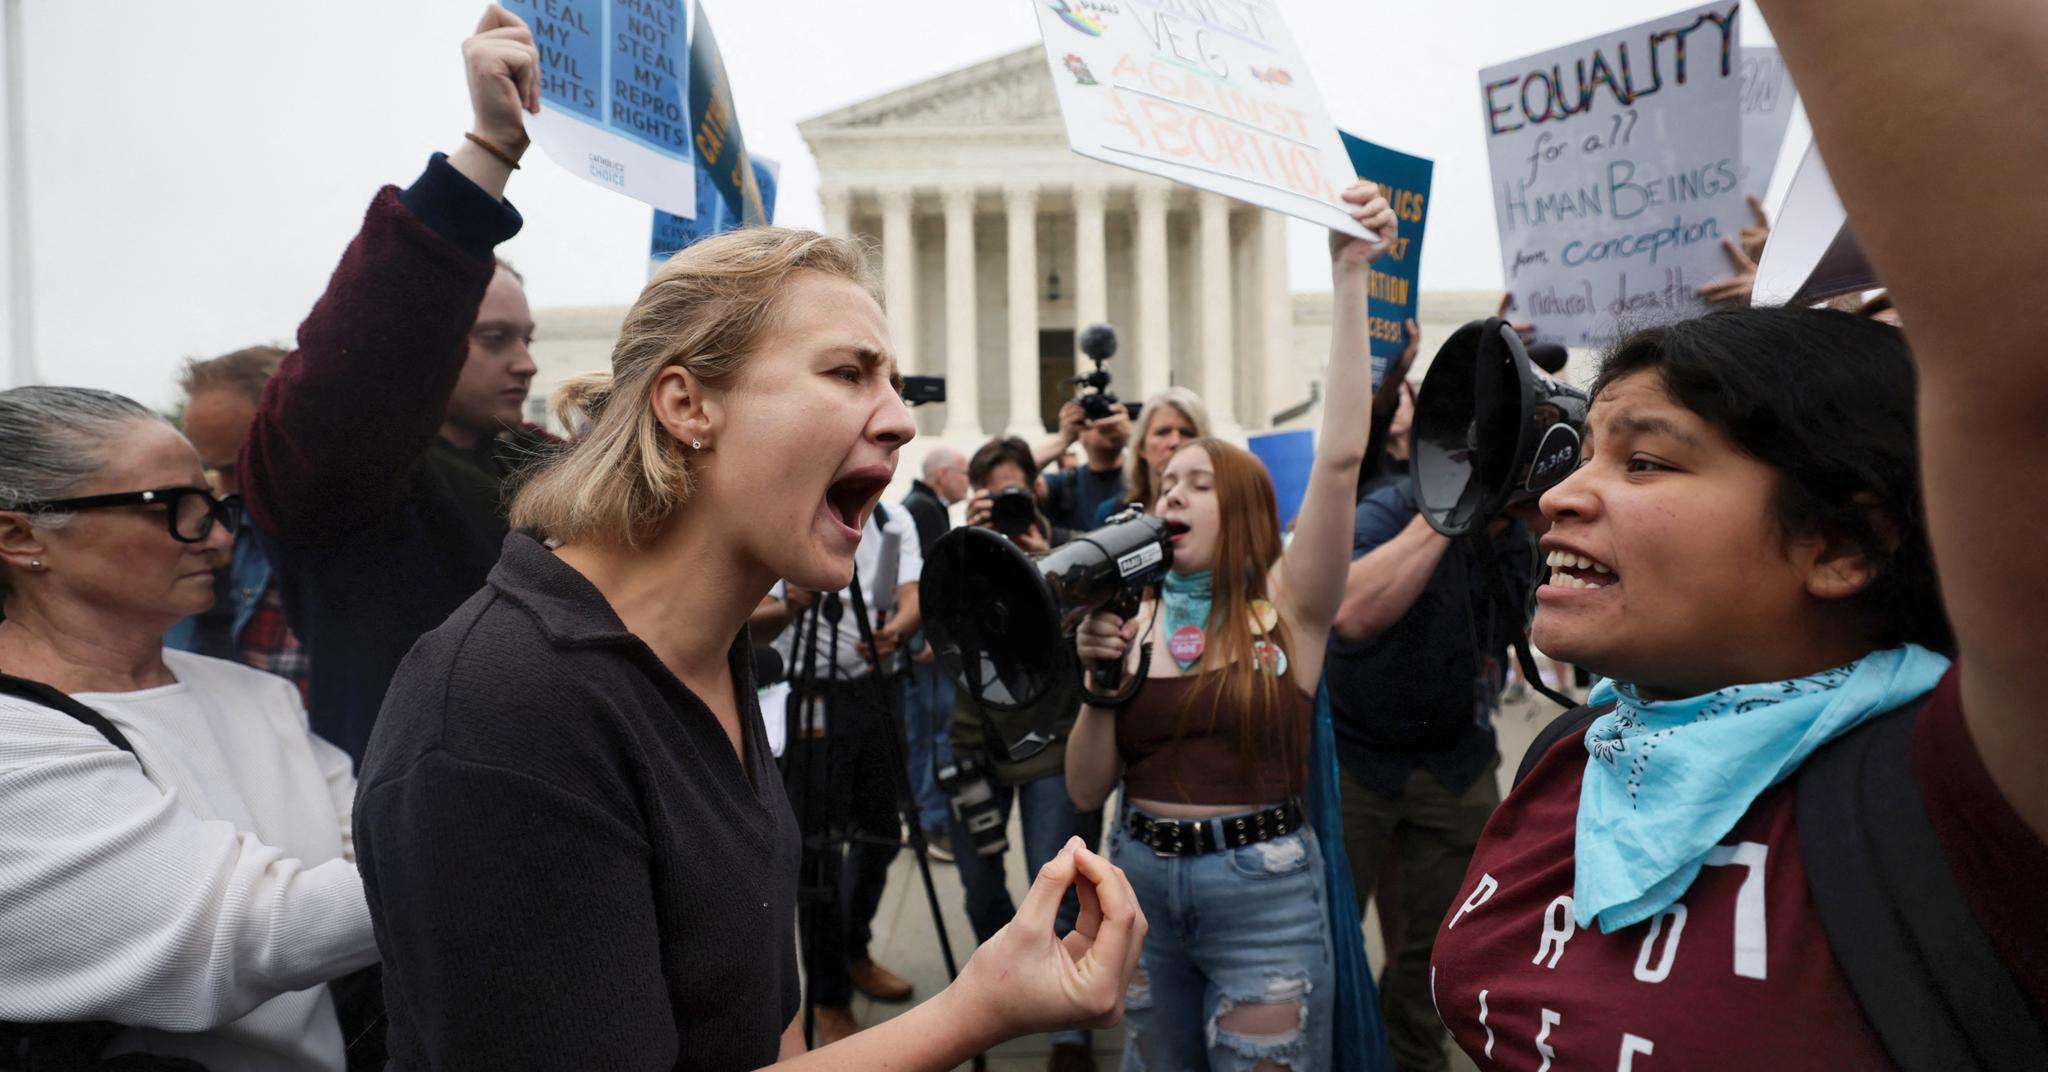 Motstandere og tilhengere av abort har demonstrert utenfor høyesterettsbygningen i Washington D.C. siden det lekkede domsutkastet ble kjent mandag kveld.